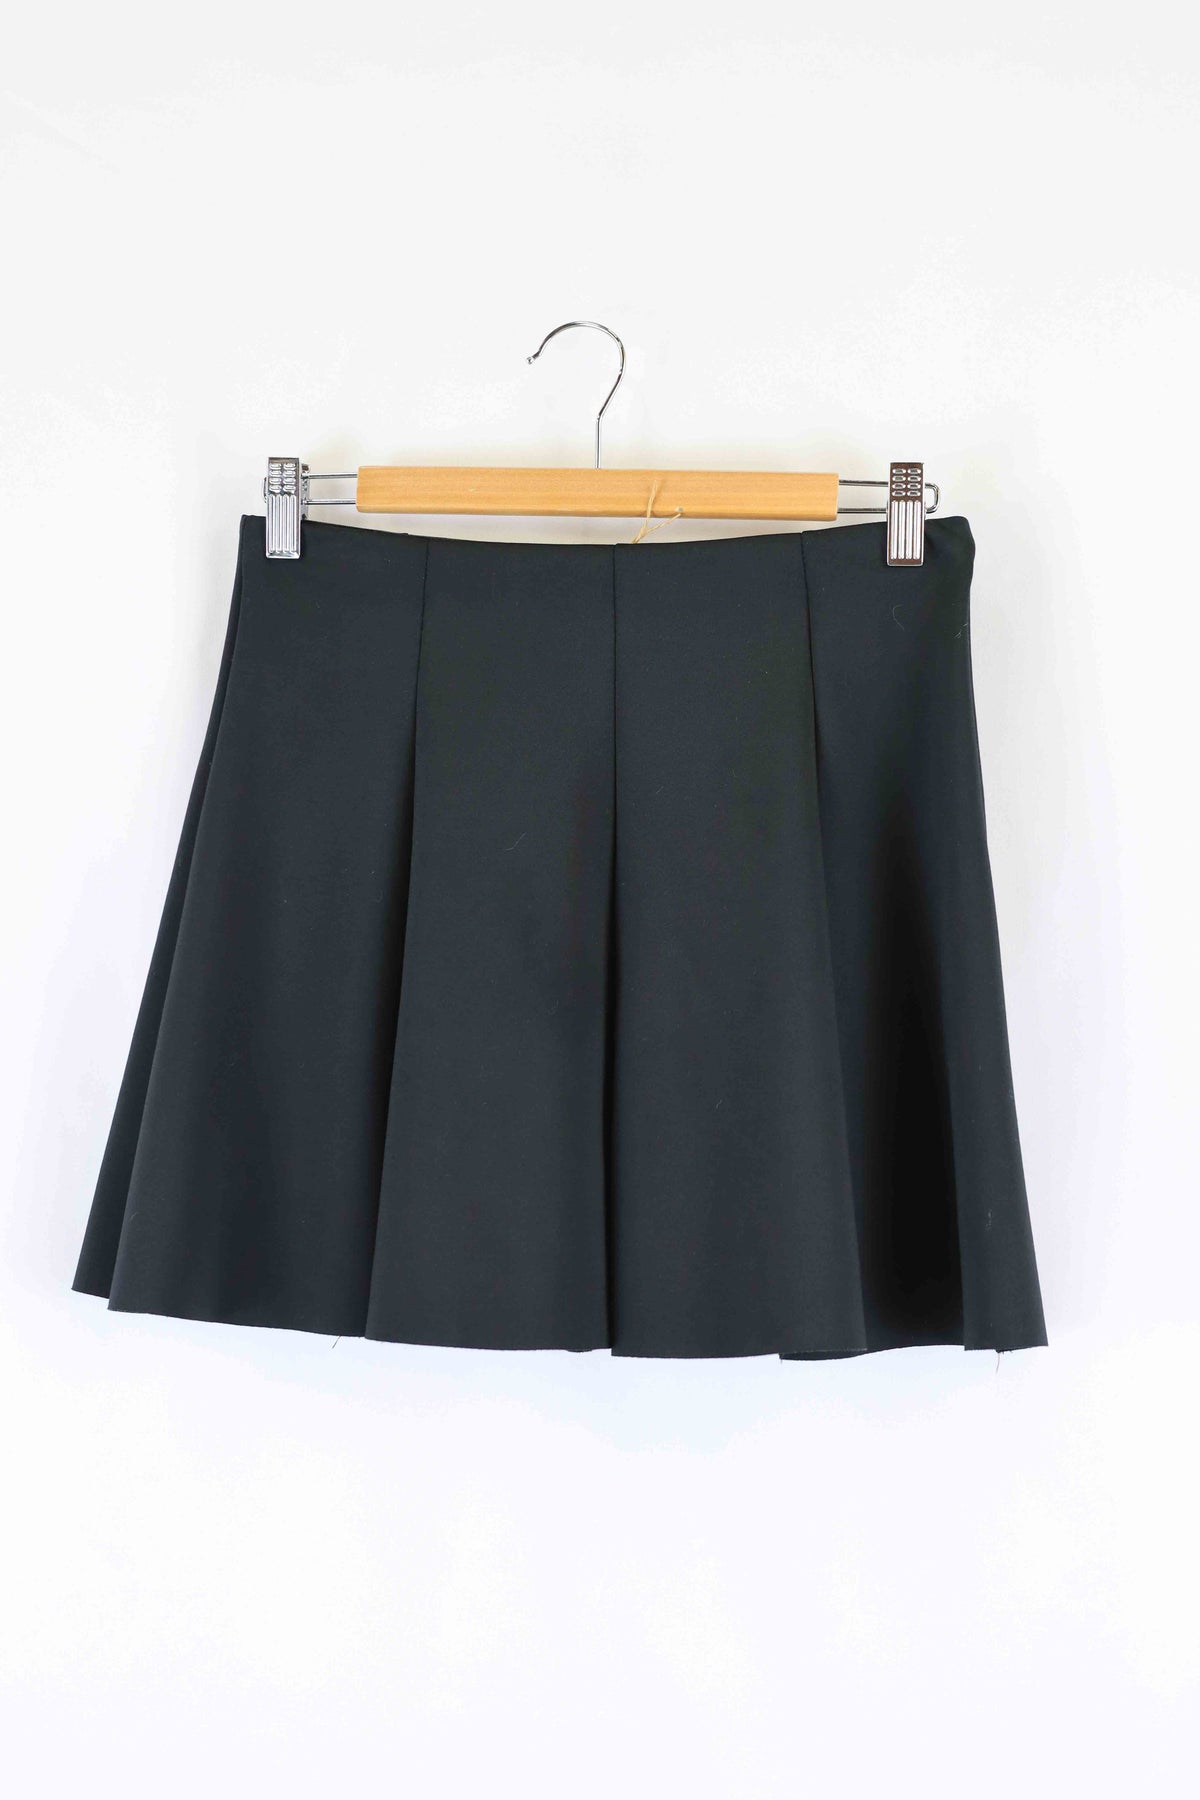 Zara Black Skirt S